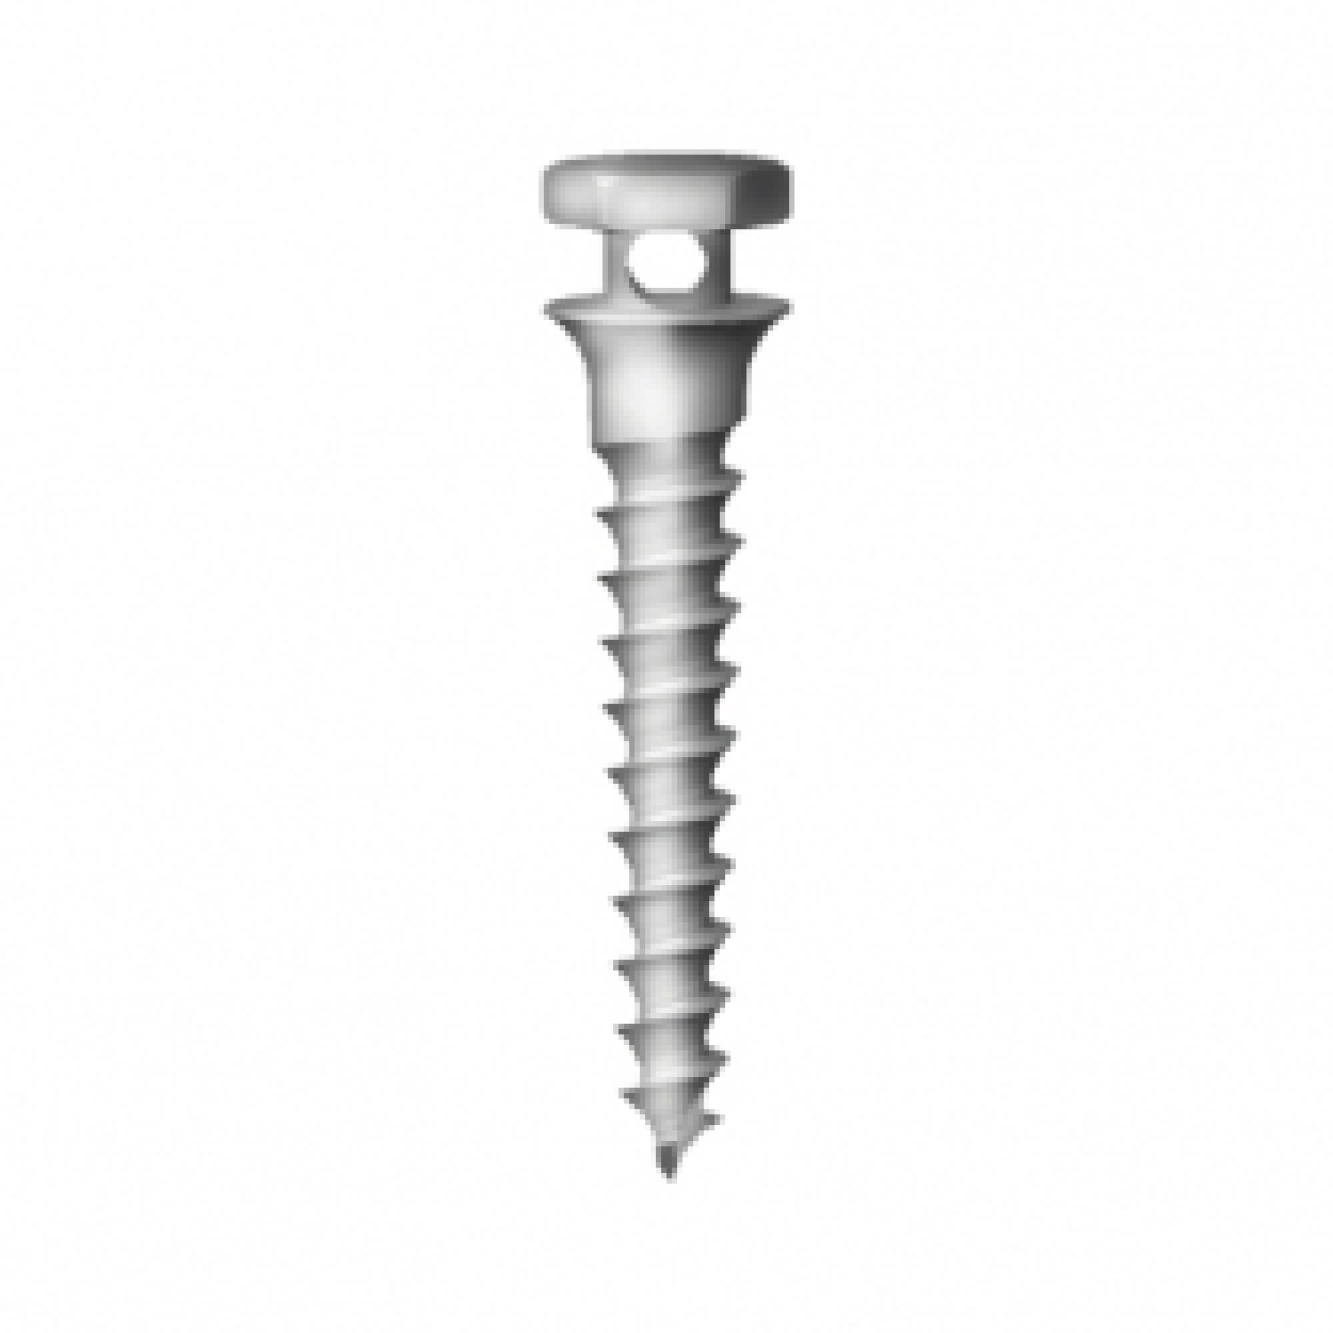 OS-S-20-010 Стоматологический ортодонтический винт для эластичной тяги и проволоки, диаметр 1.8 мм длина 10 мм, Mr.Curette Tech, Южная Корея